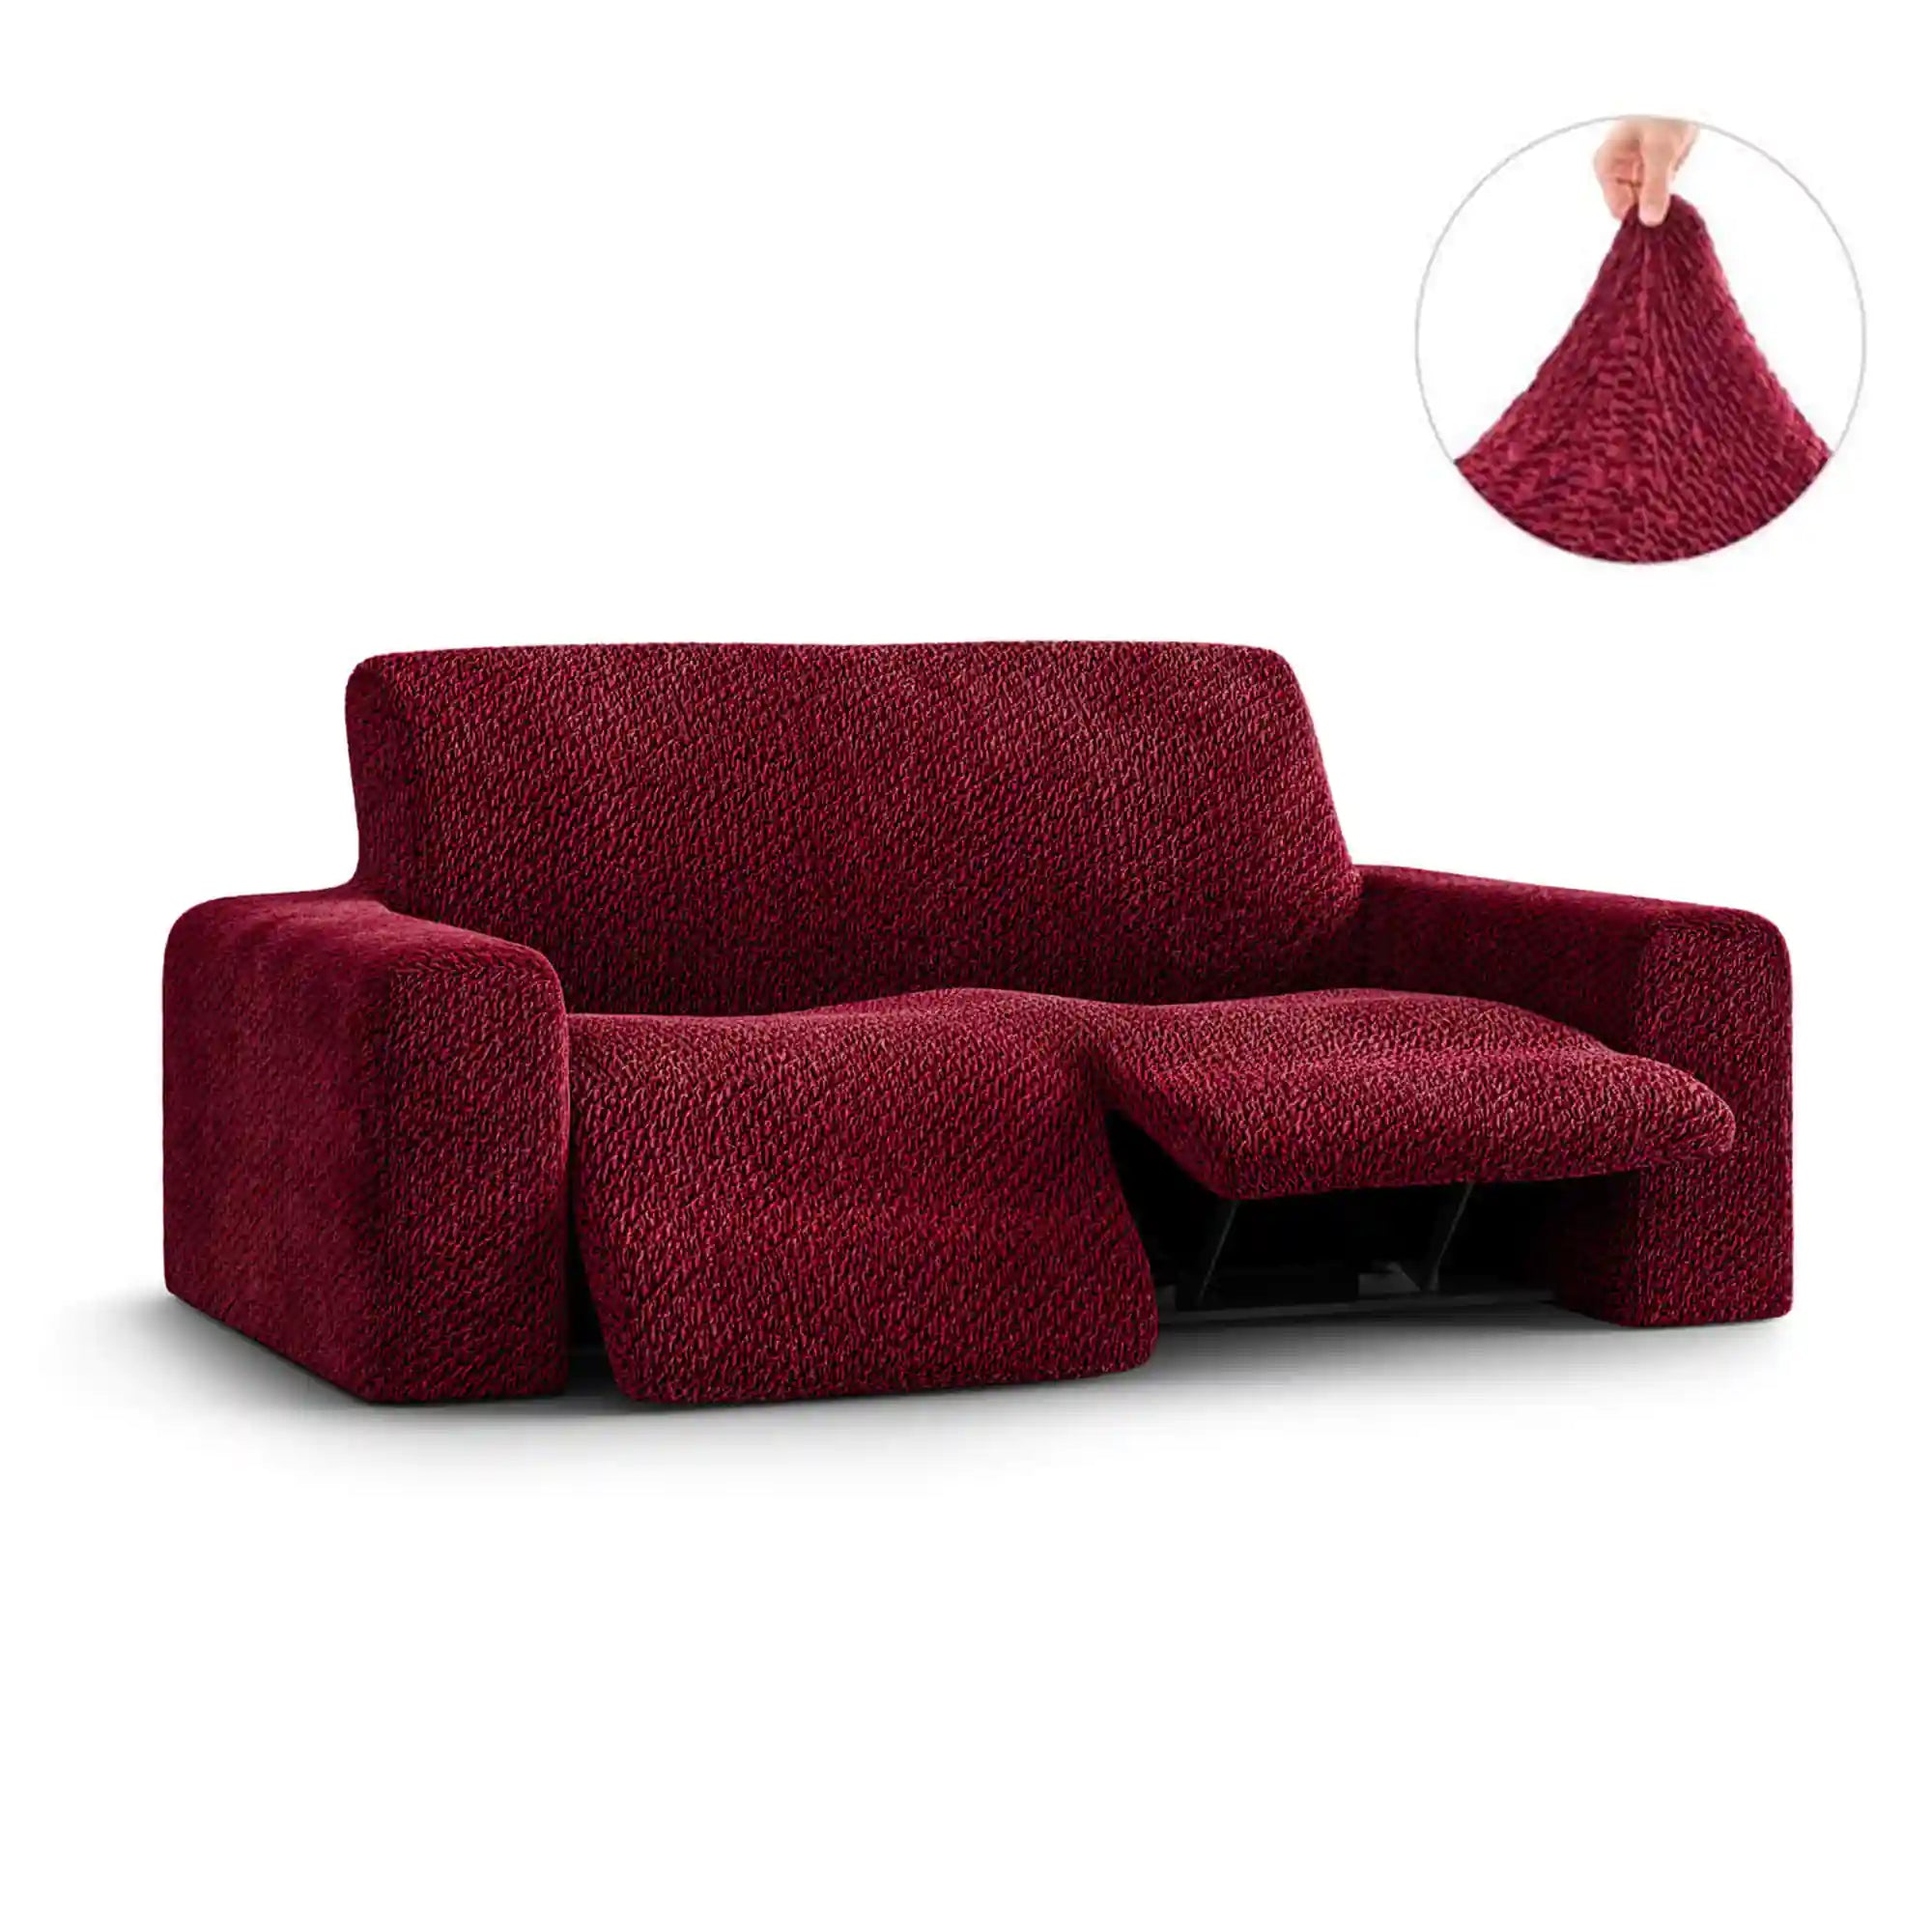 2 Seater Recliner Sofa Cover - Bordeaux, Velvet